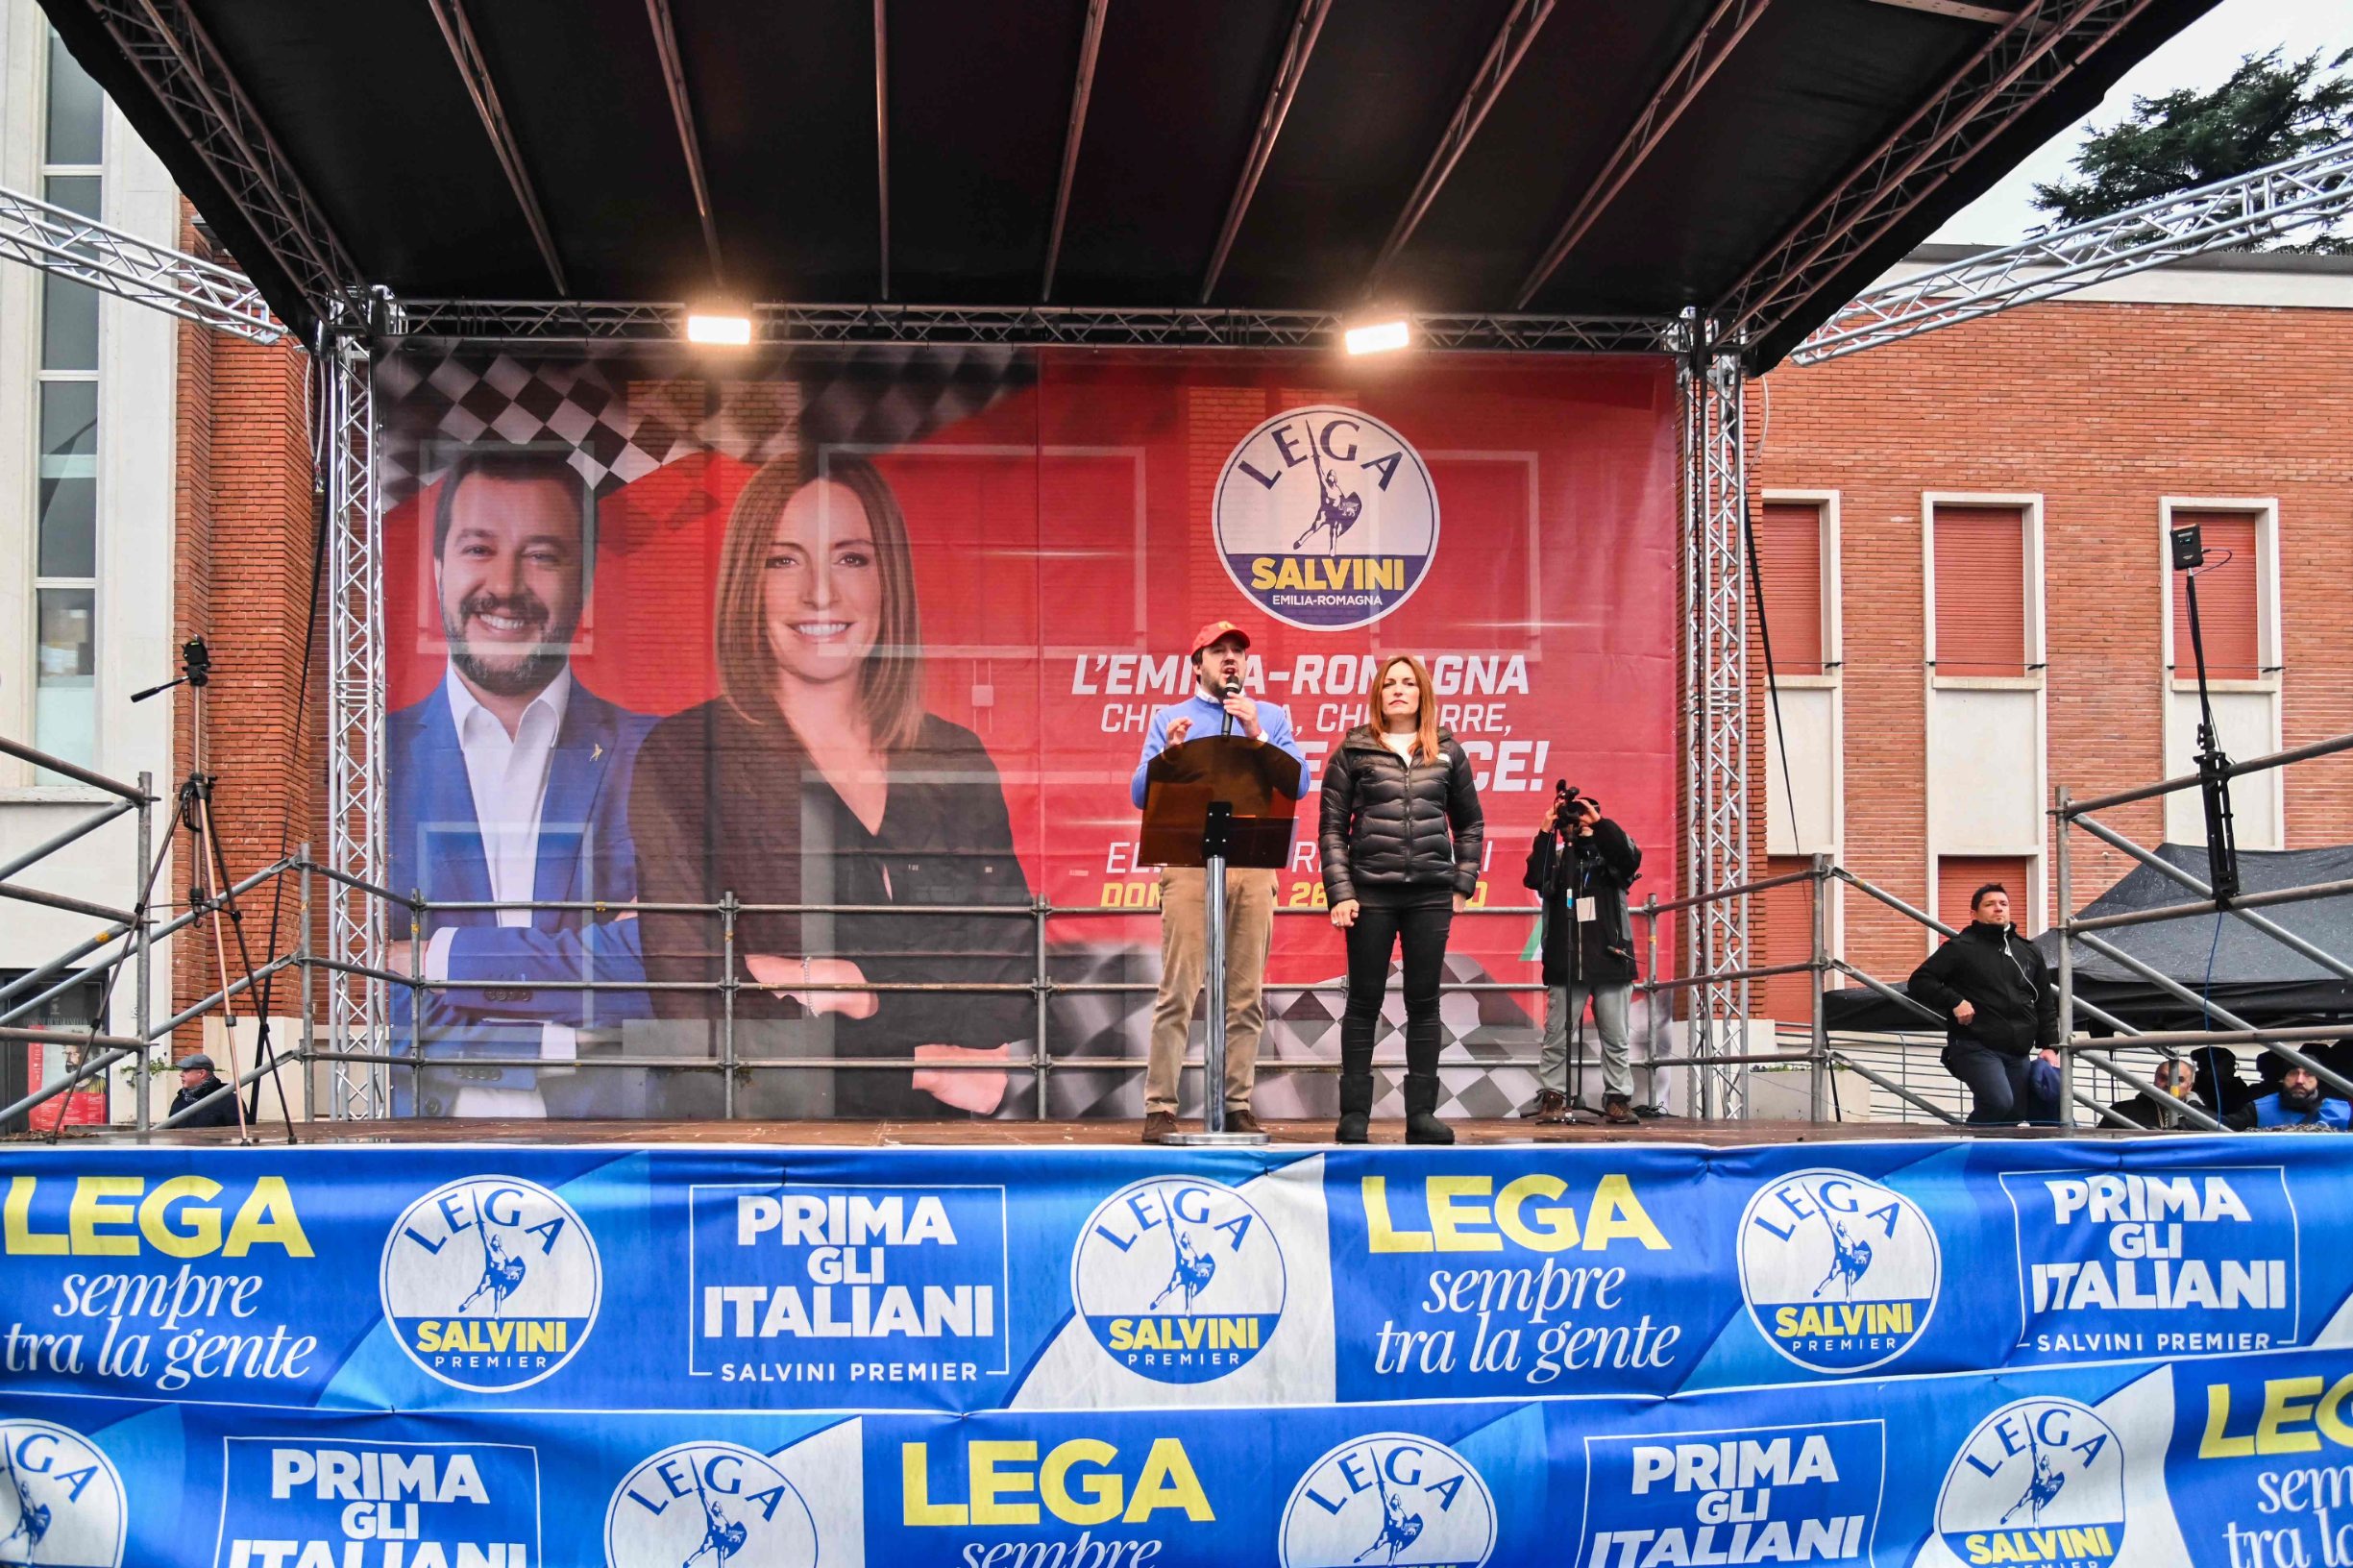 Uzalud je Matteo Salvini uložio izuzetan napor da pogura svoju kandidatkinju Luciju Borgonzoni. 